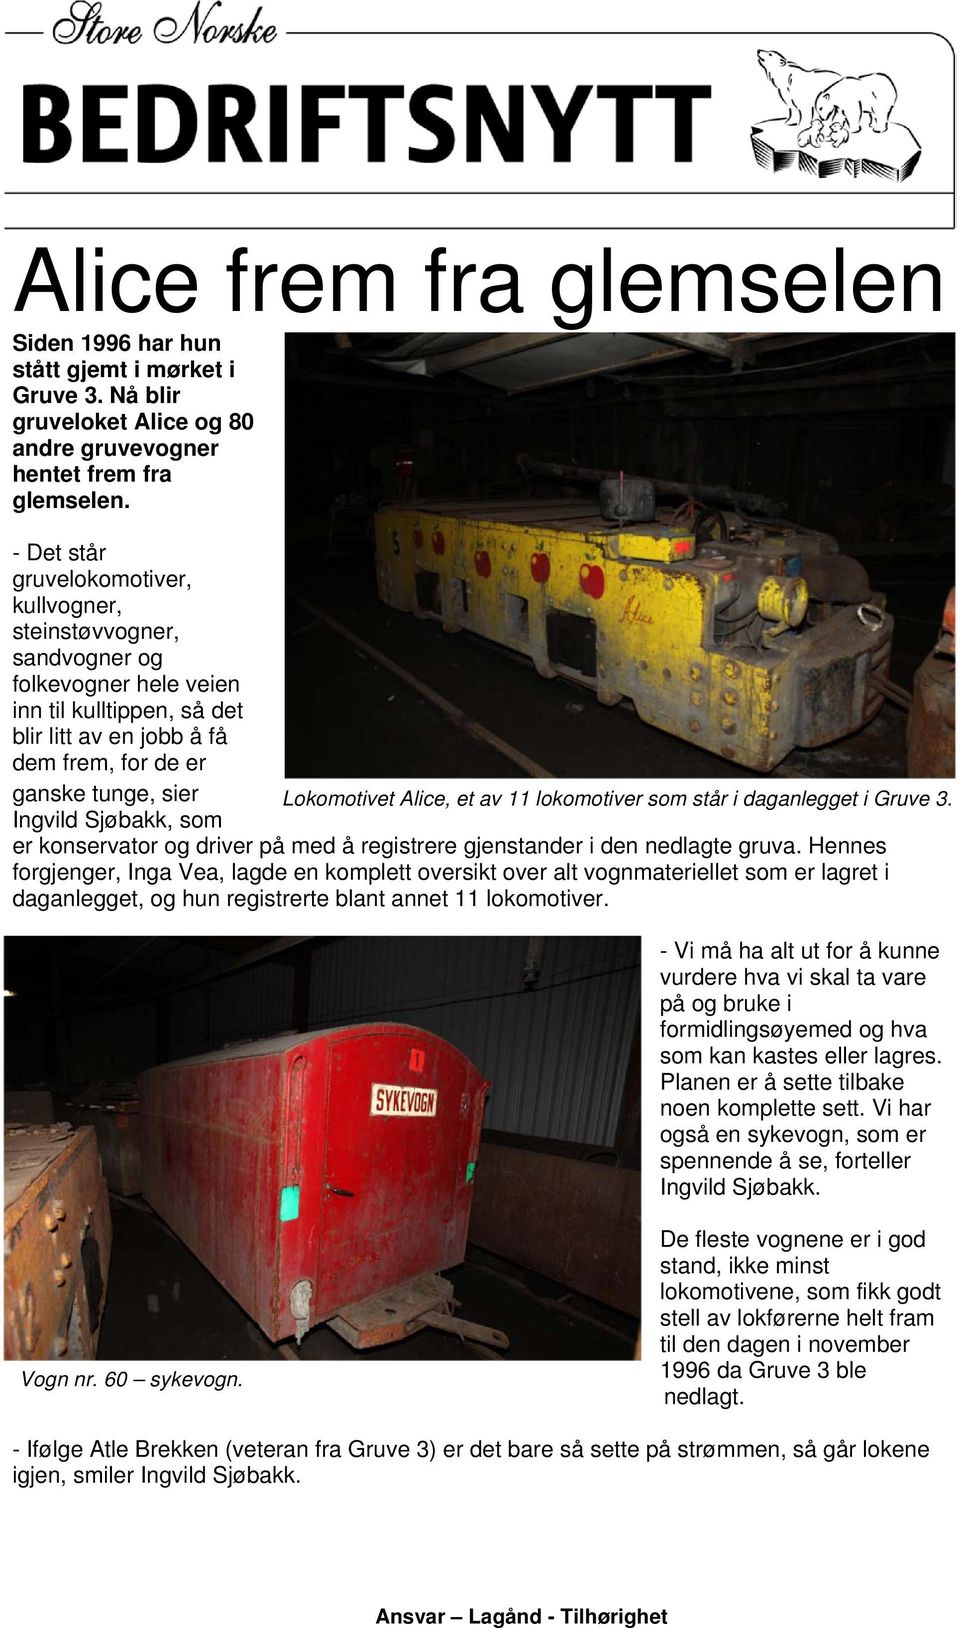 Alice, et av 11 lokomotiver som står i daganlegget i Gruve 3. Ingvild Sjøbakk, som er konservator og driver på med å registrere gjenstander i den nedlagte gruva.